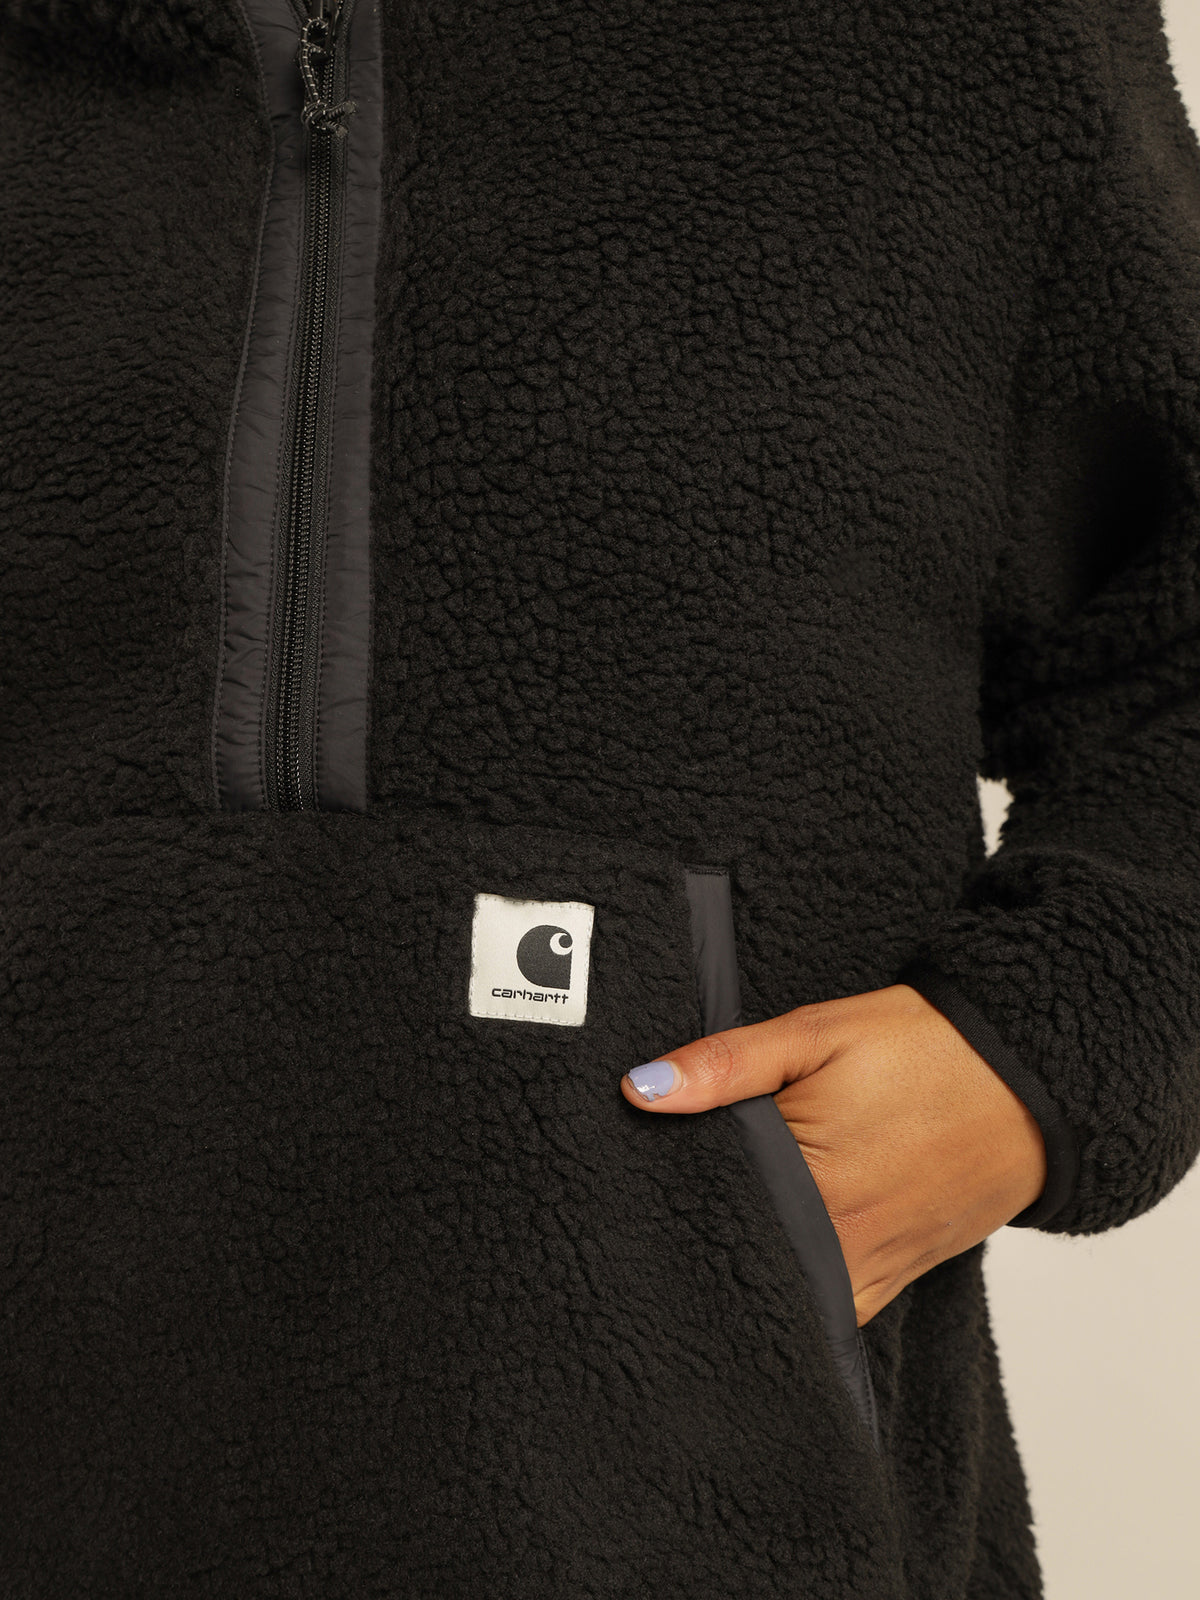 Hooded Loon Liner Sherpa Jacket in Black